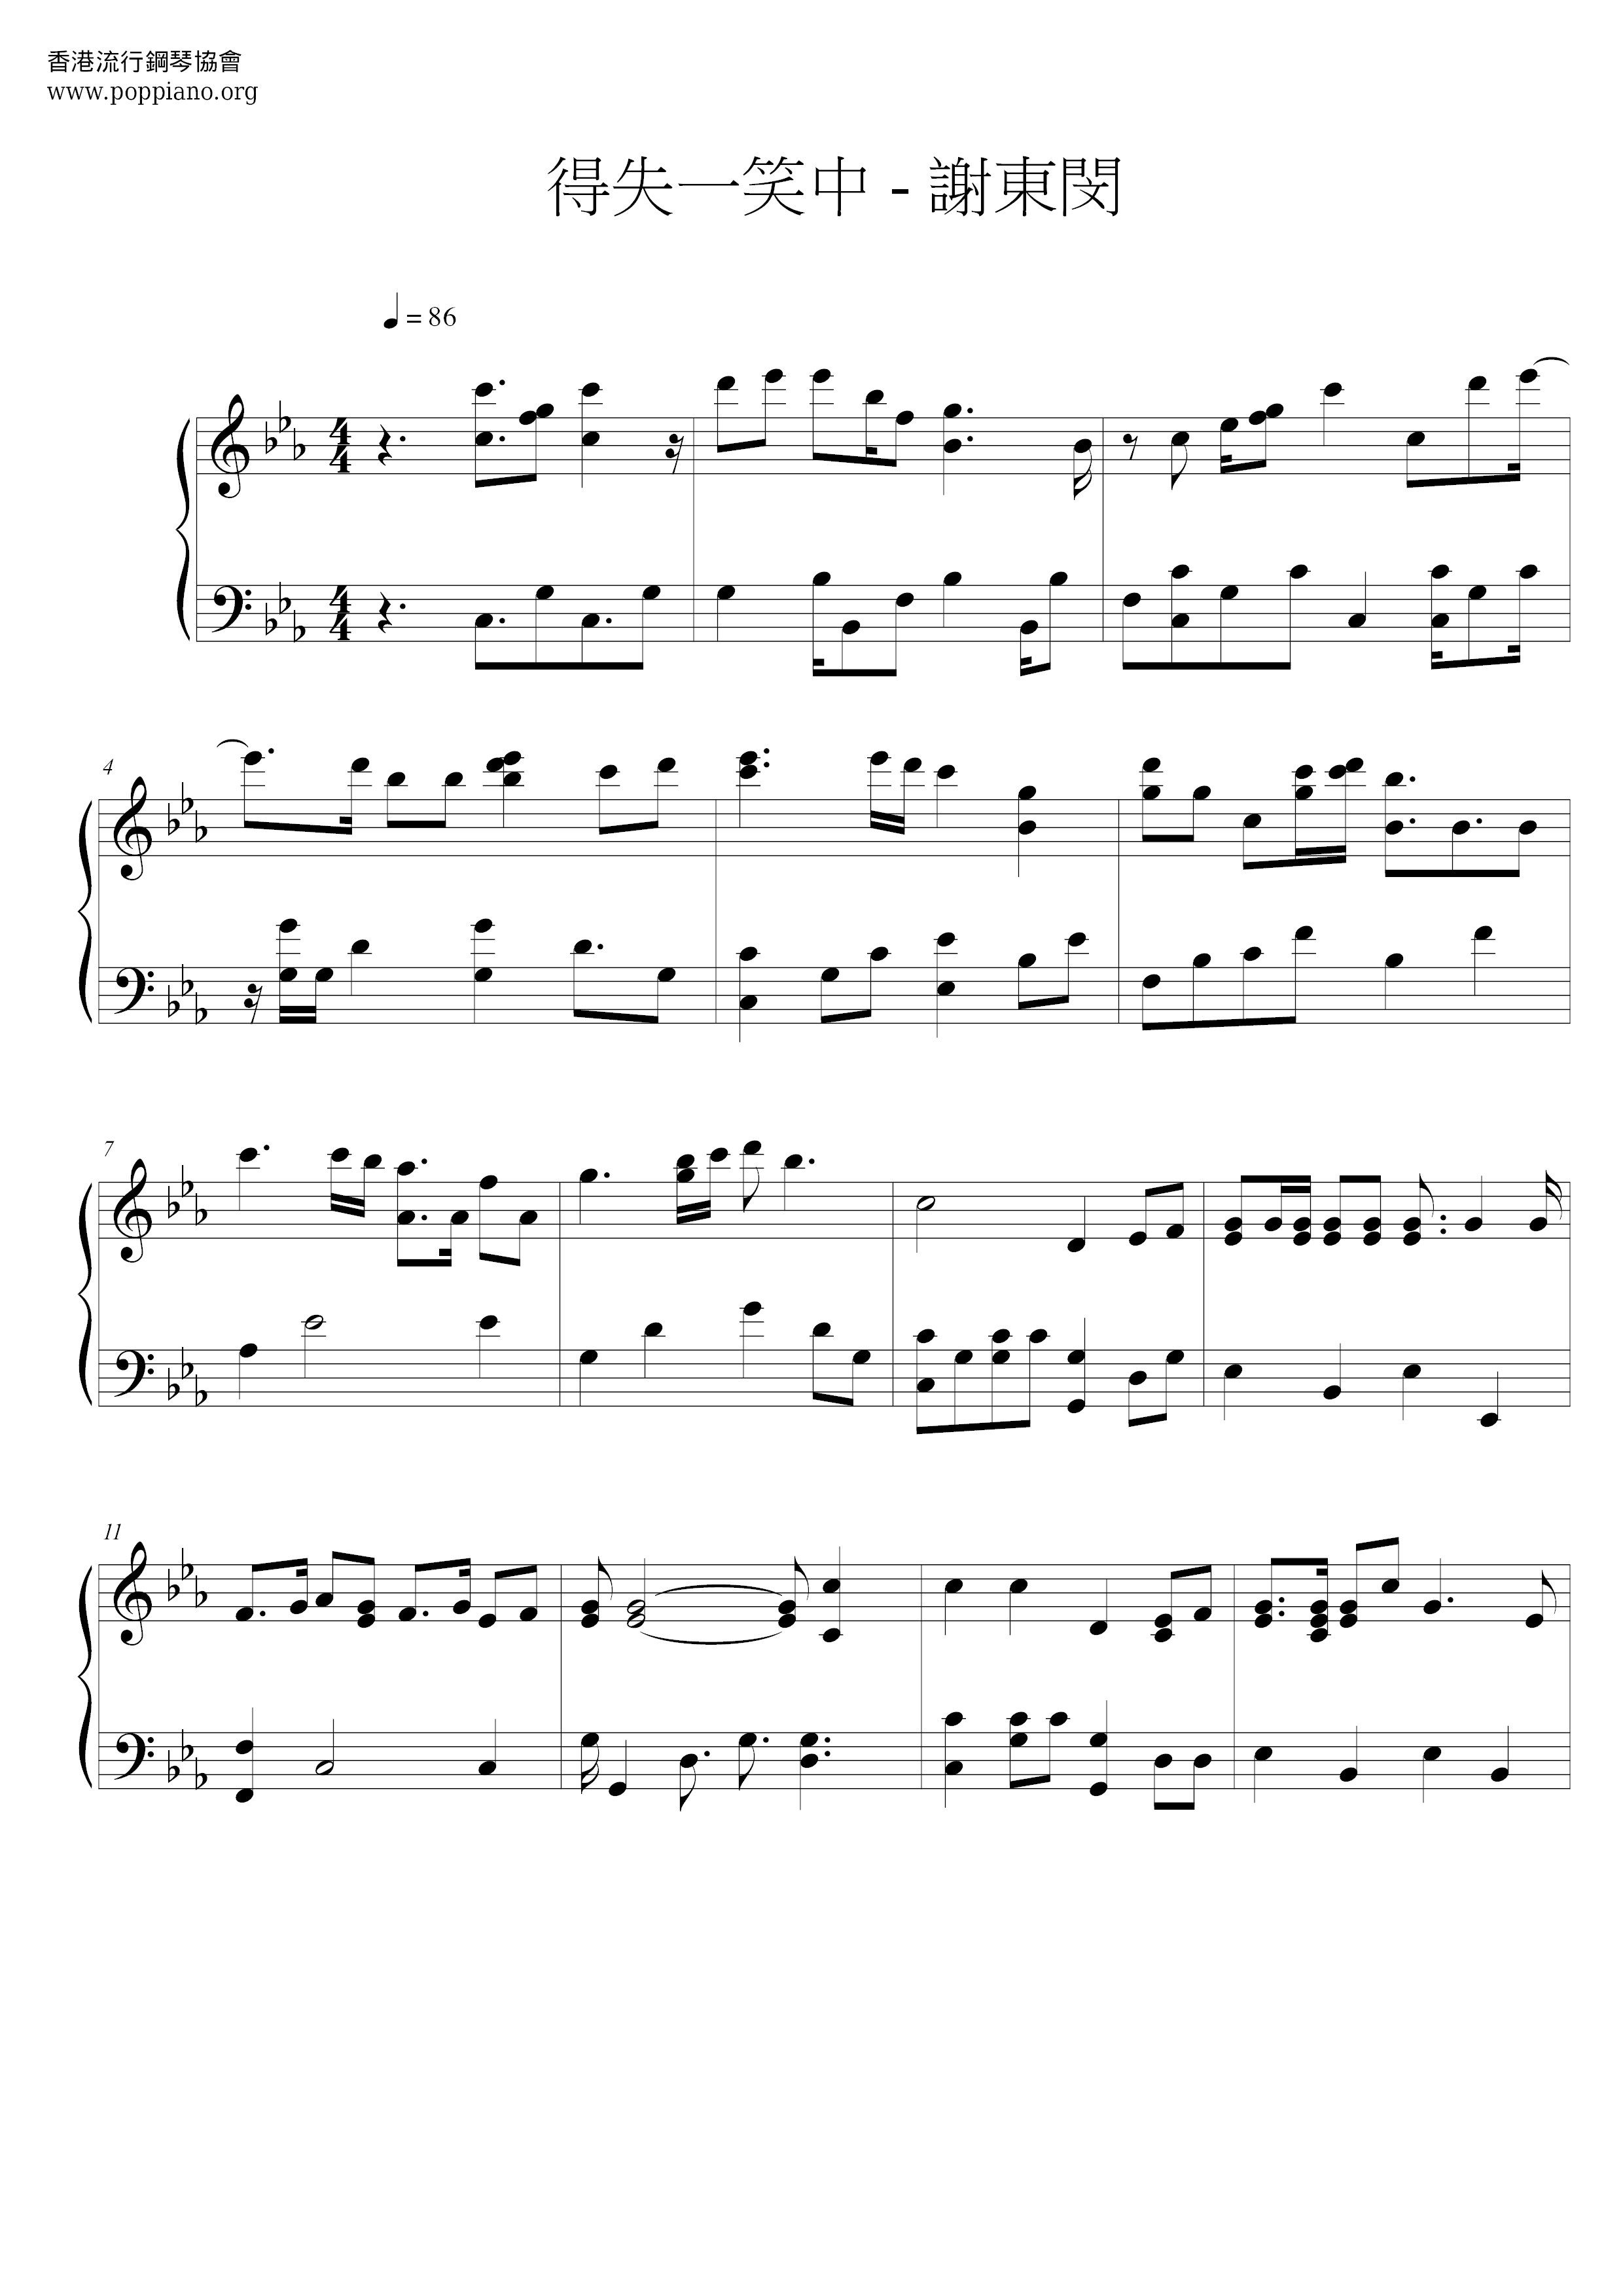 In (the Theme Song Of Yi Tian Tu Long Ji) Score